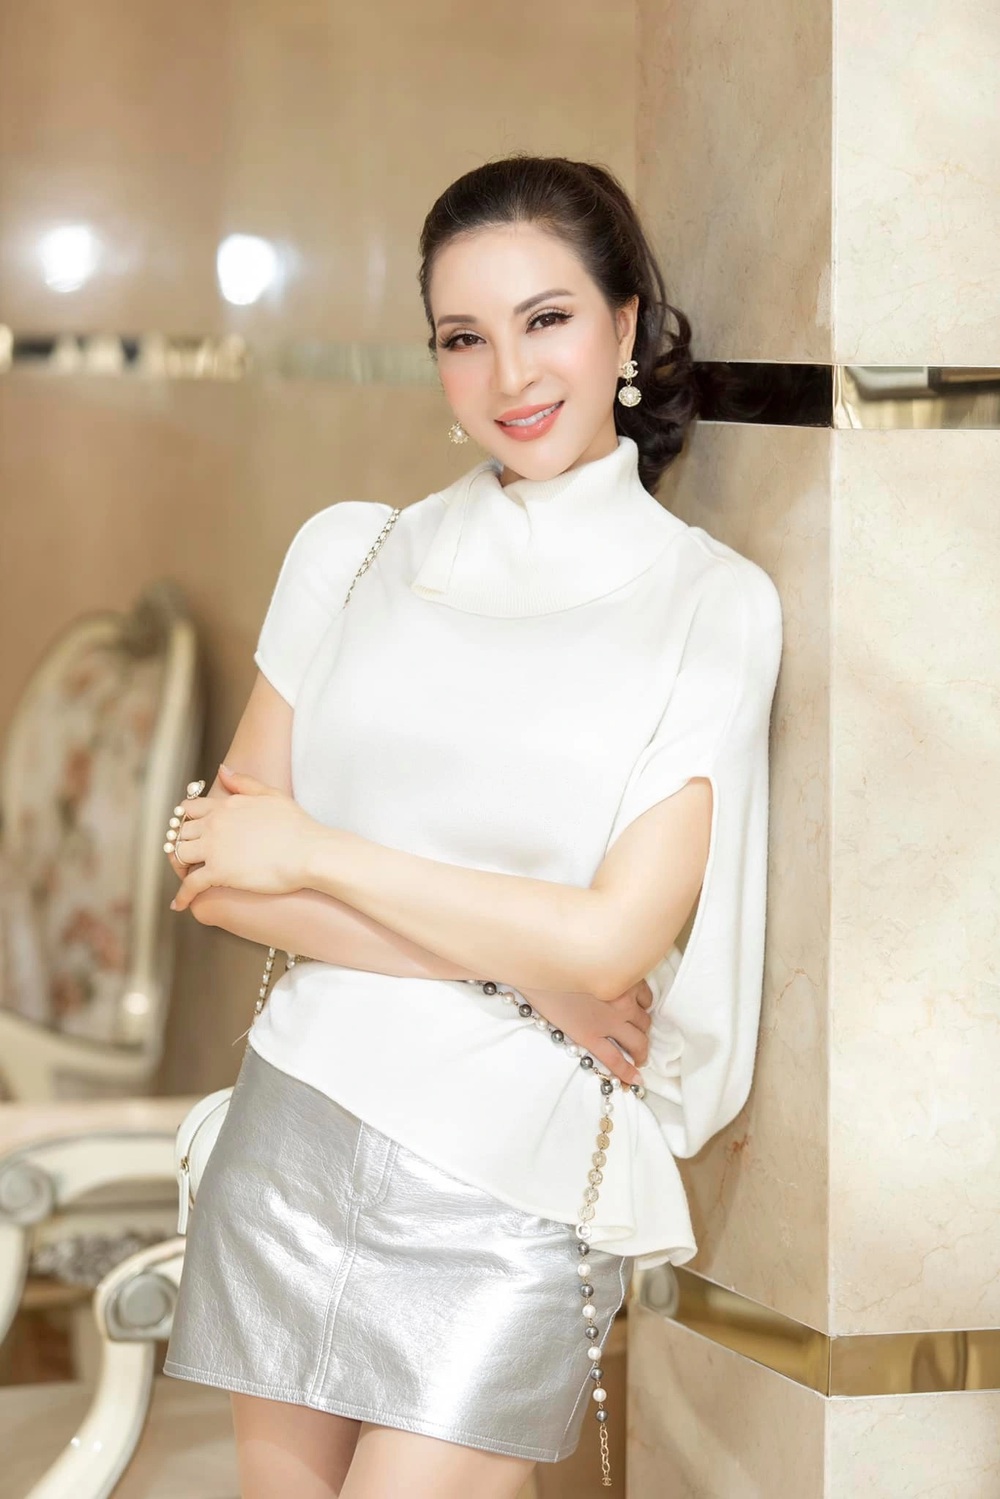 Cuộc sống bí ẩn của á hậu Thanh Mai, nhận mình là hồng nhan bạc tỷ ở tuổi 50 - Ảnh 5.